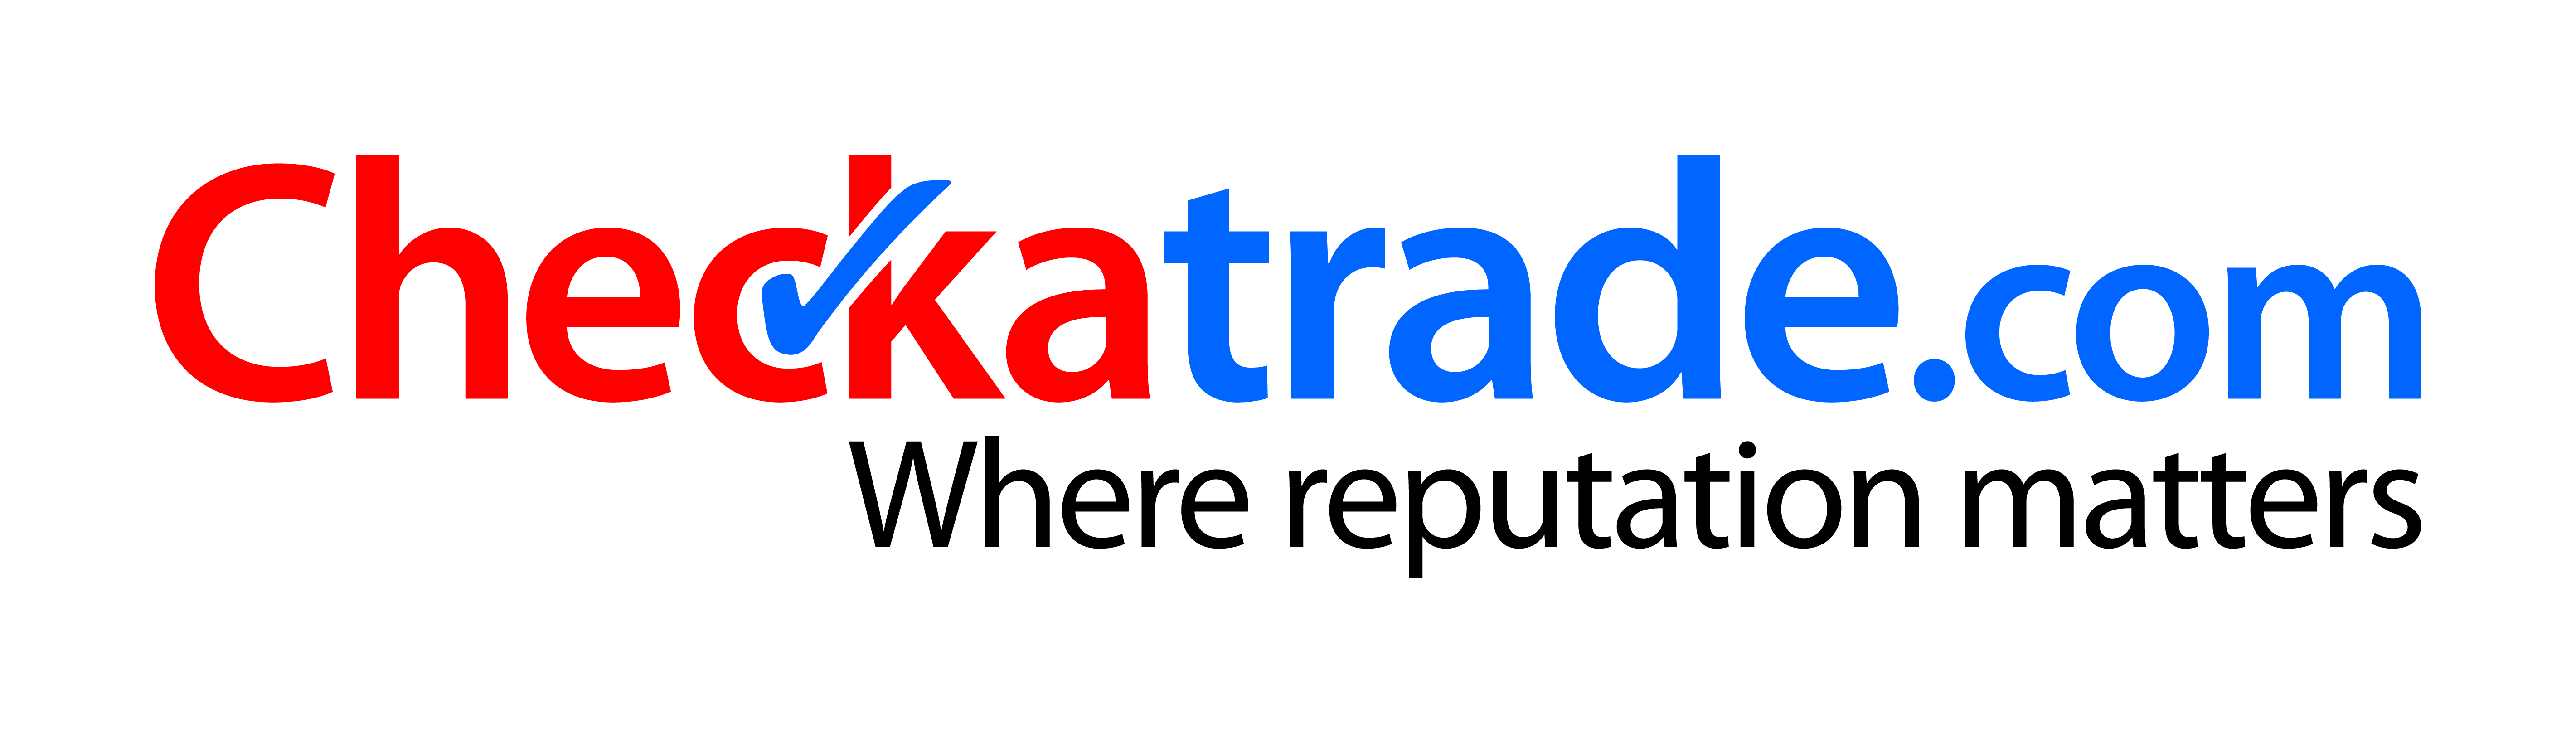 checkatrade-logo